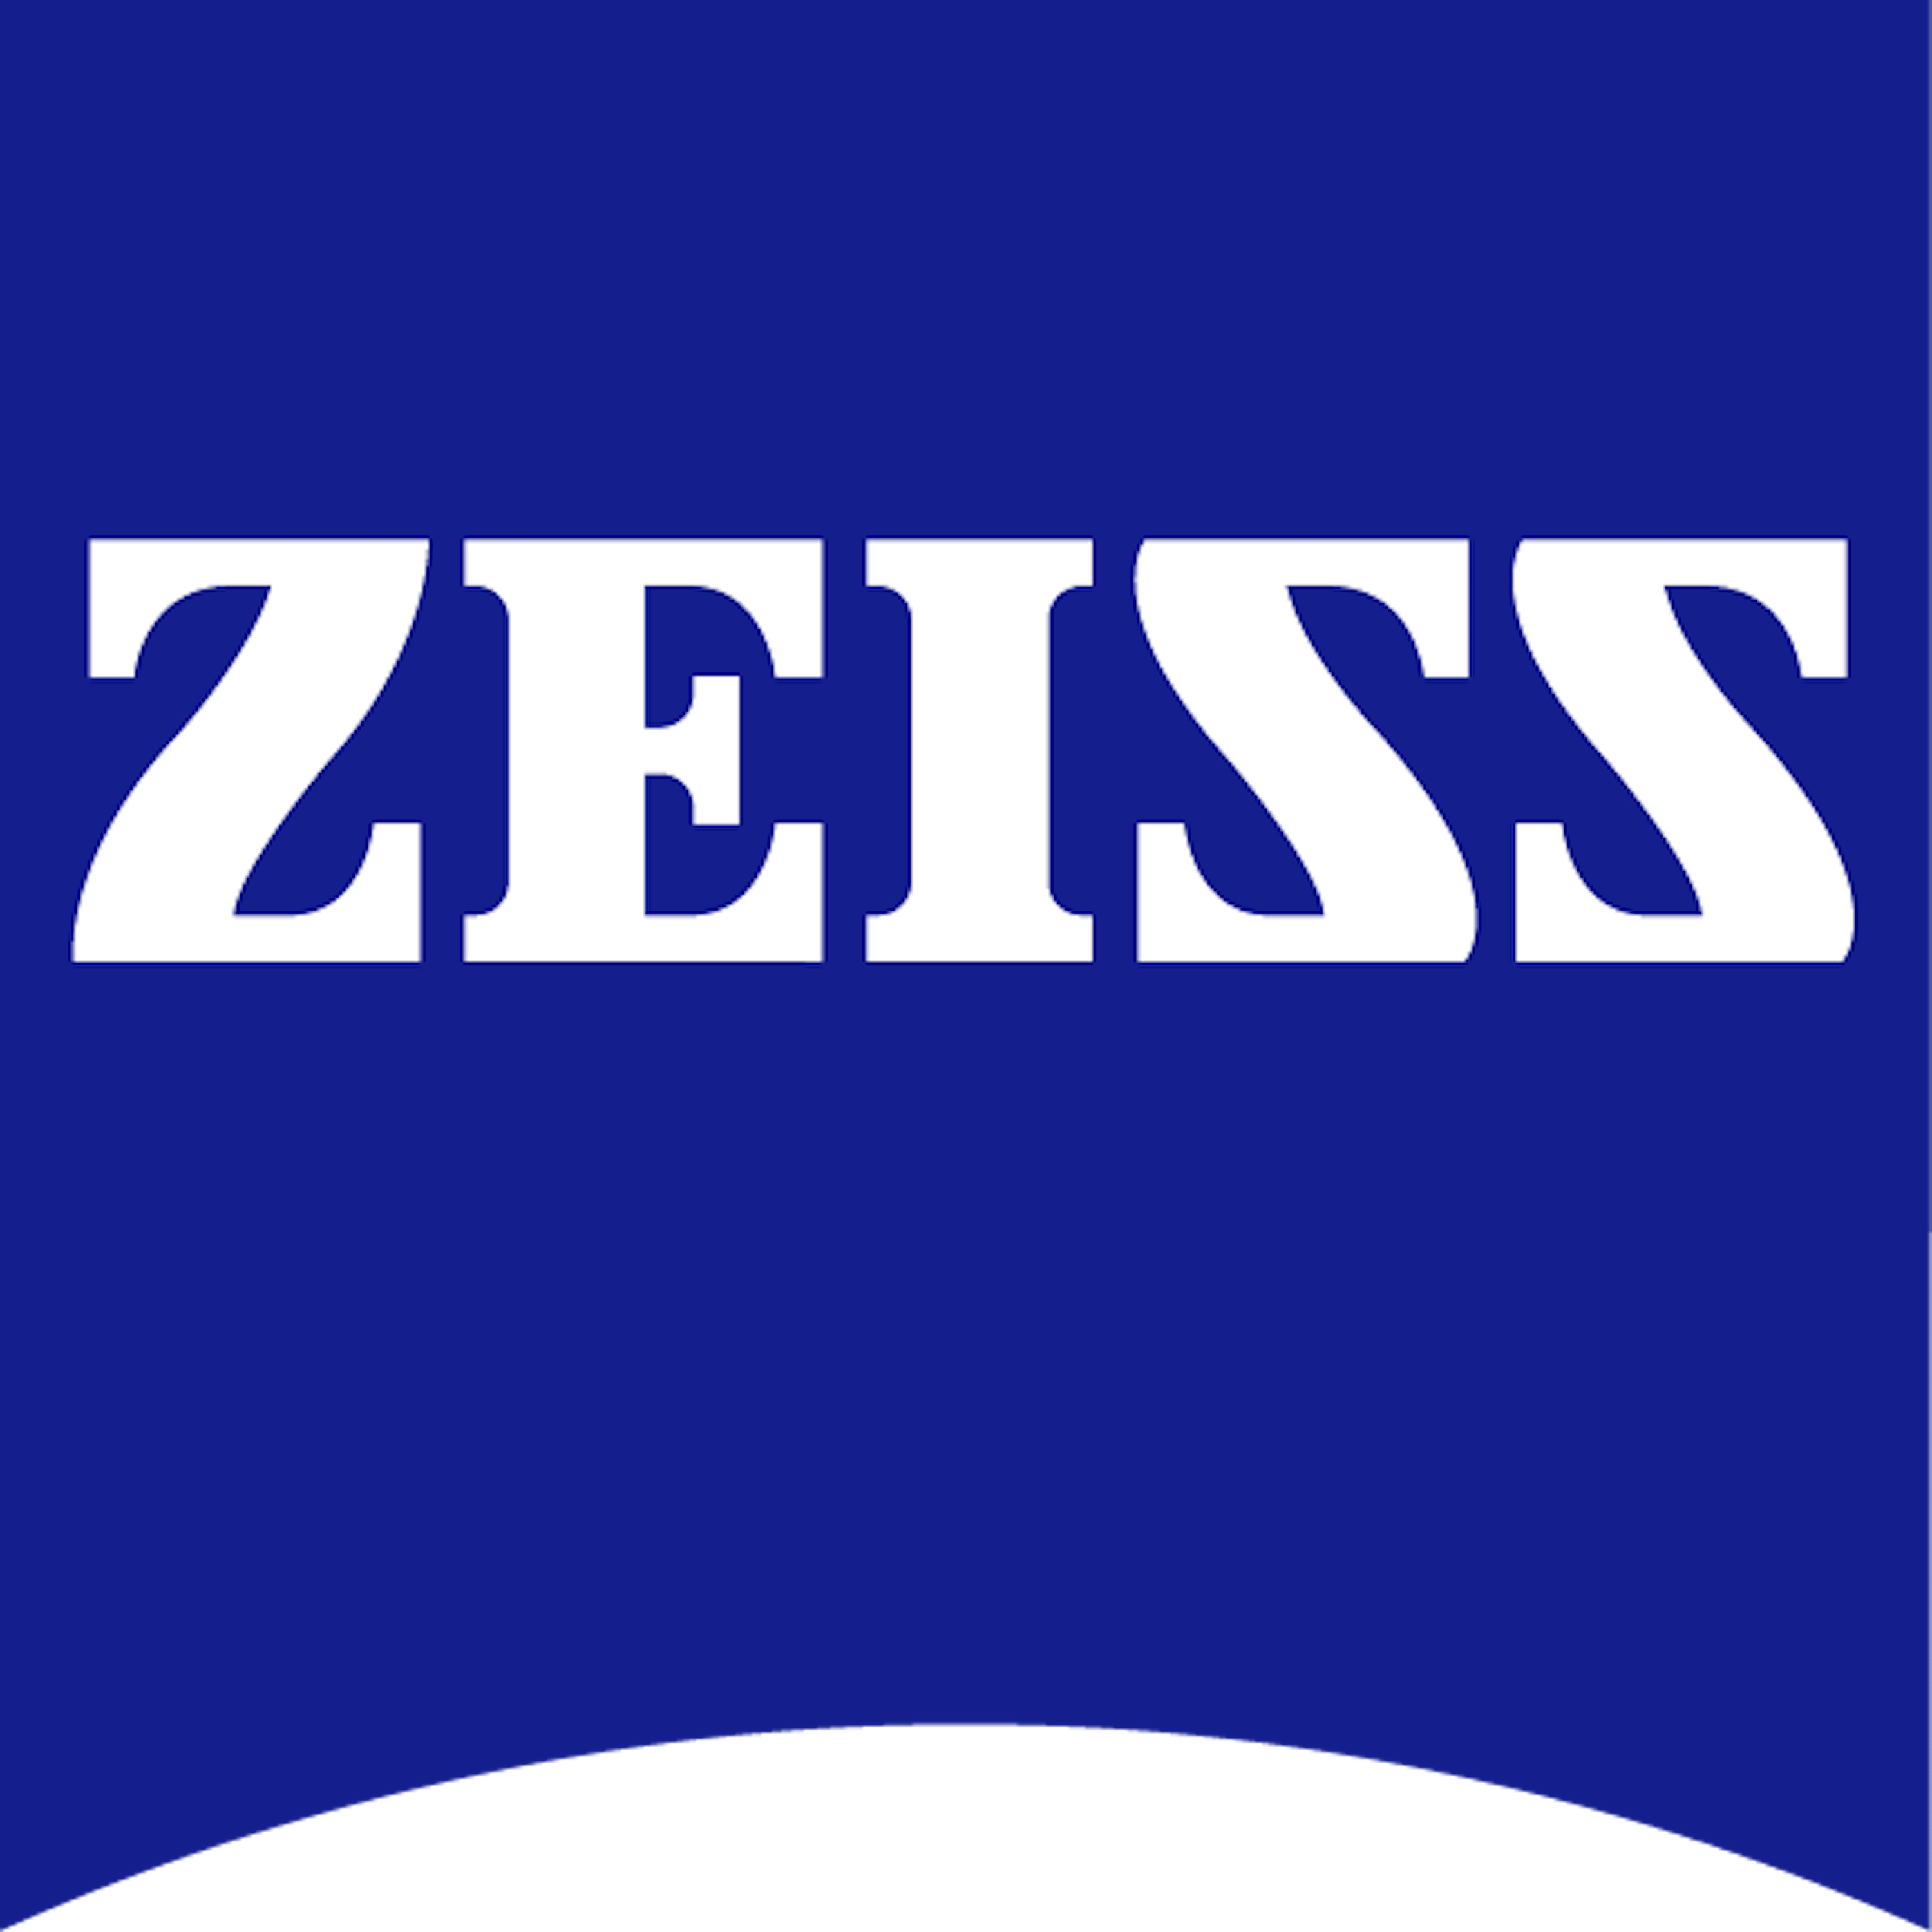 2018-03/1522245234_logo-sponsor-zeiss.png